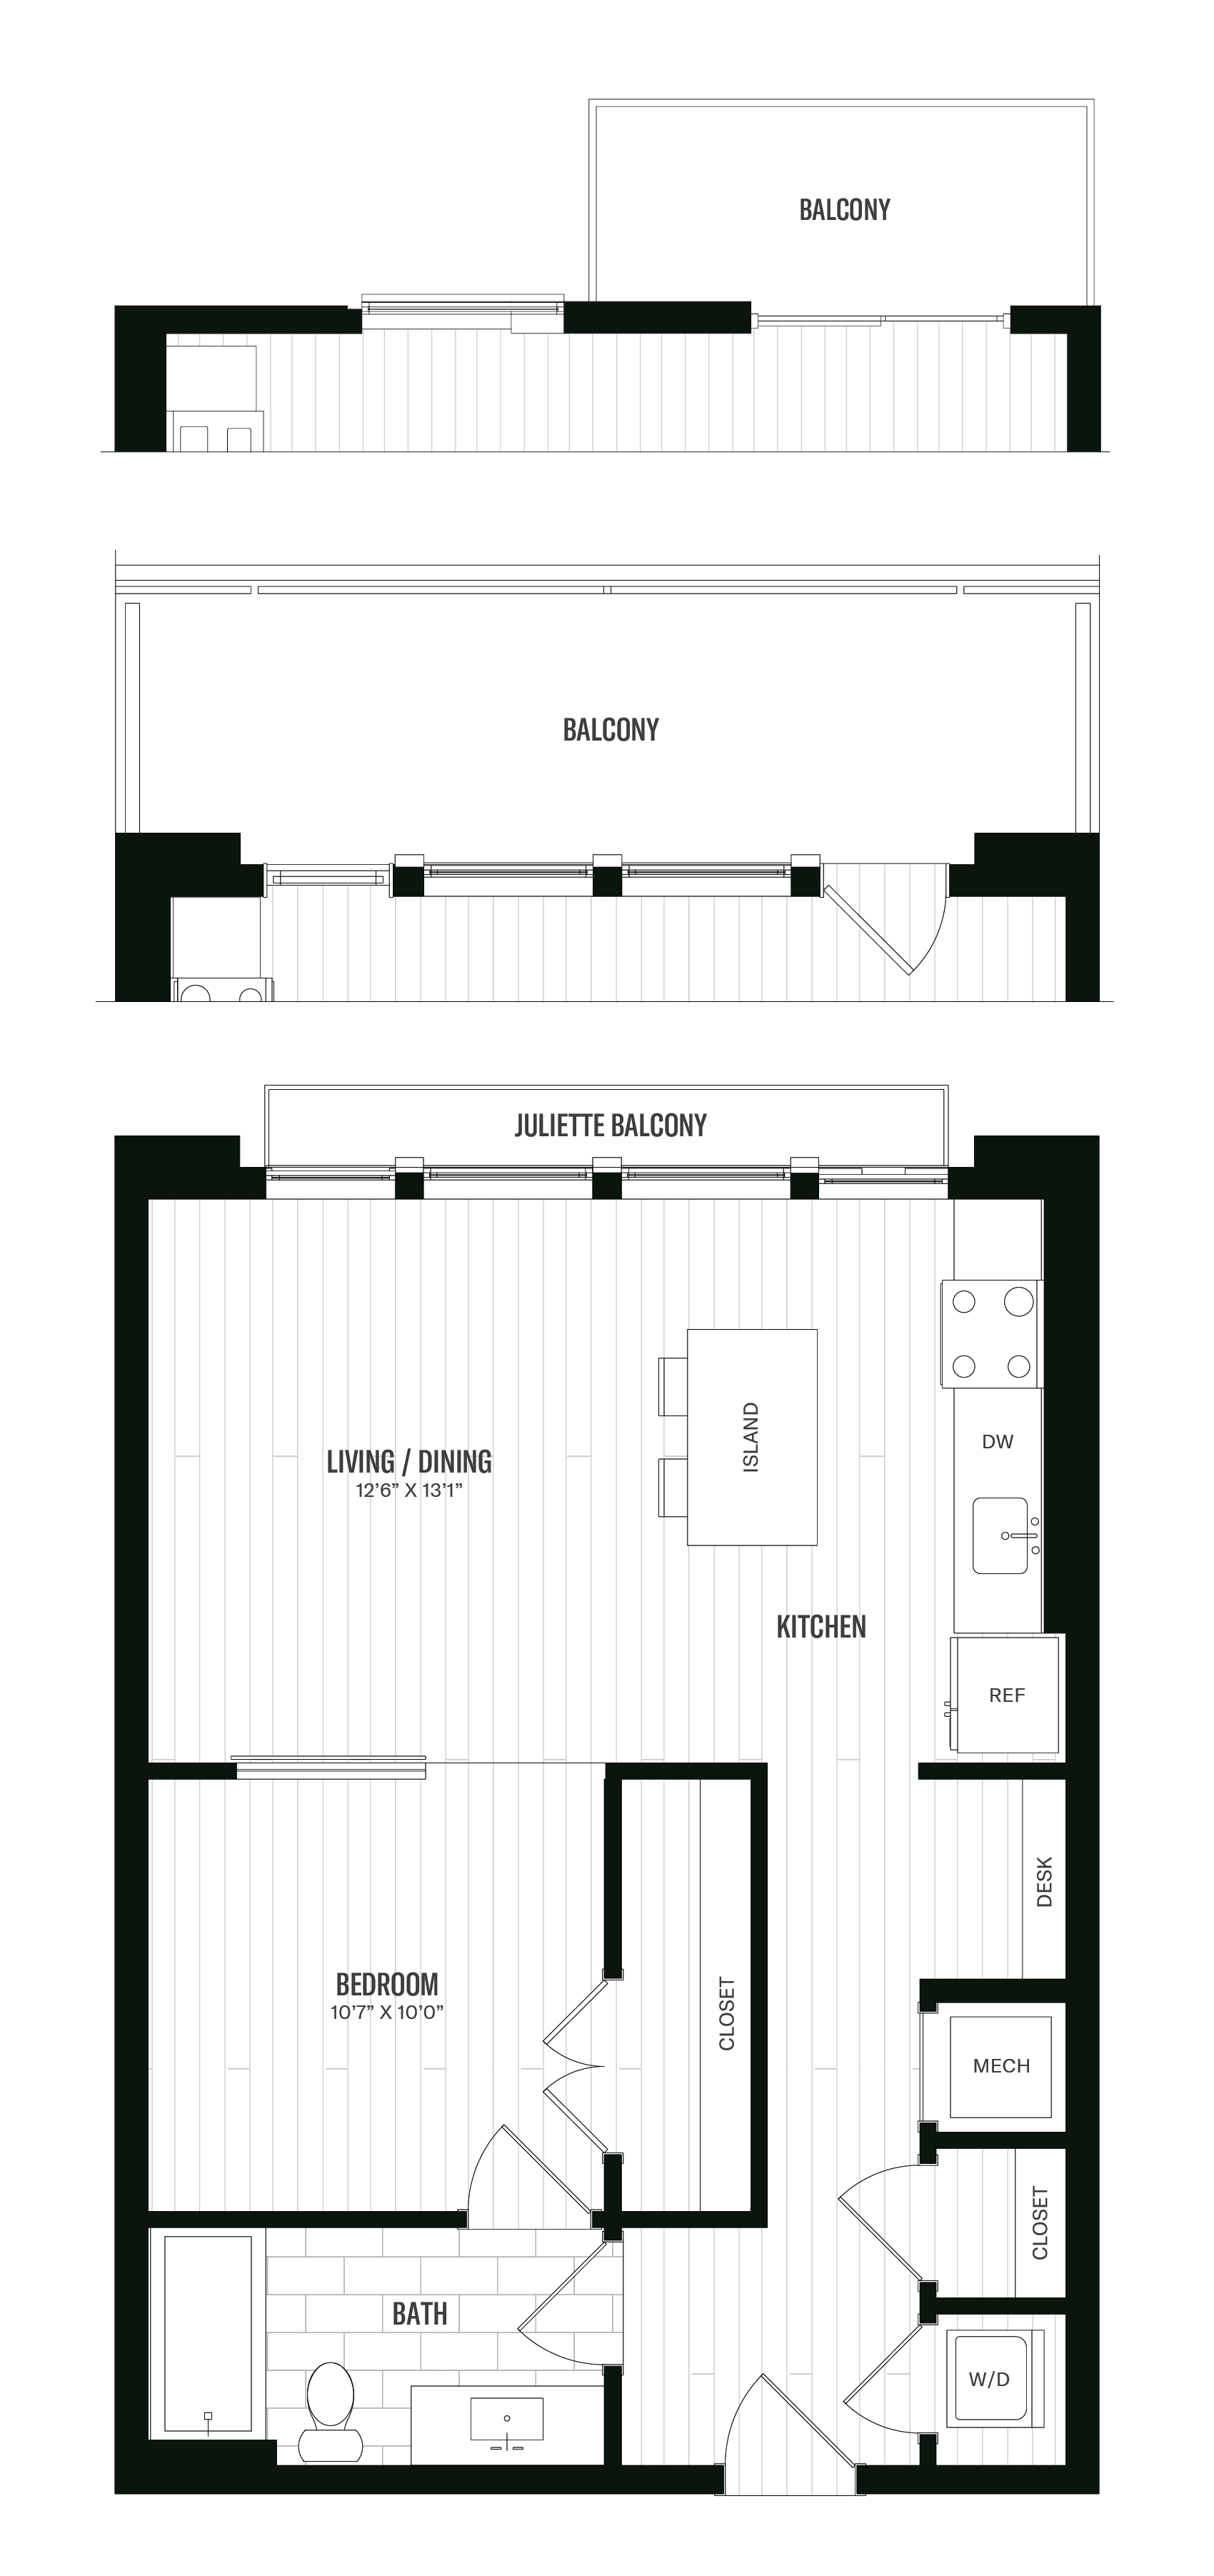 Floorplan image of unit 517